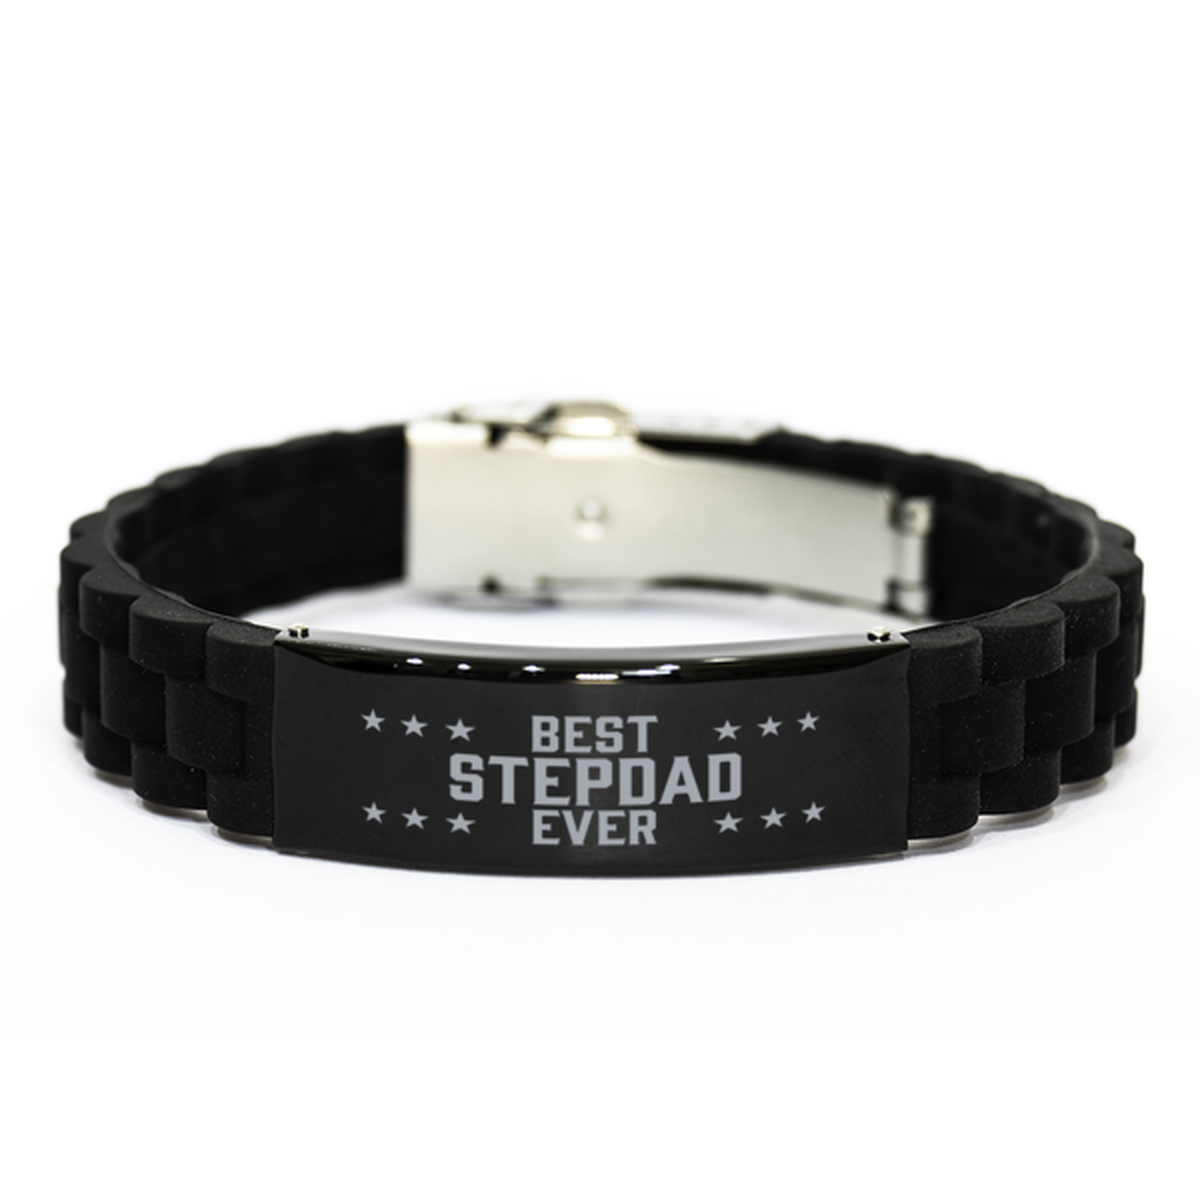 Best Stepdad Ever Stepdad Gifts, Funny Black Engraved Bracelet For Stepdad, Family Gifts For Men